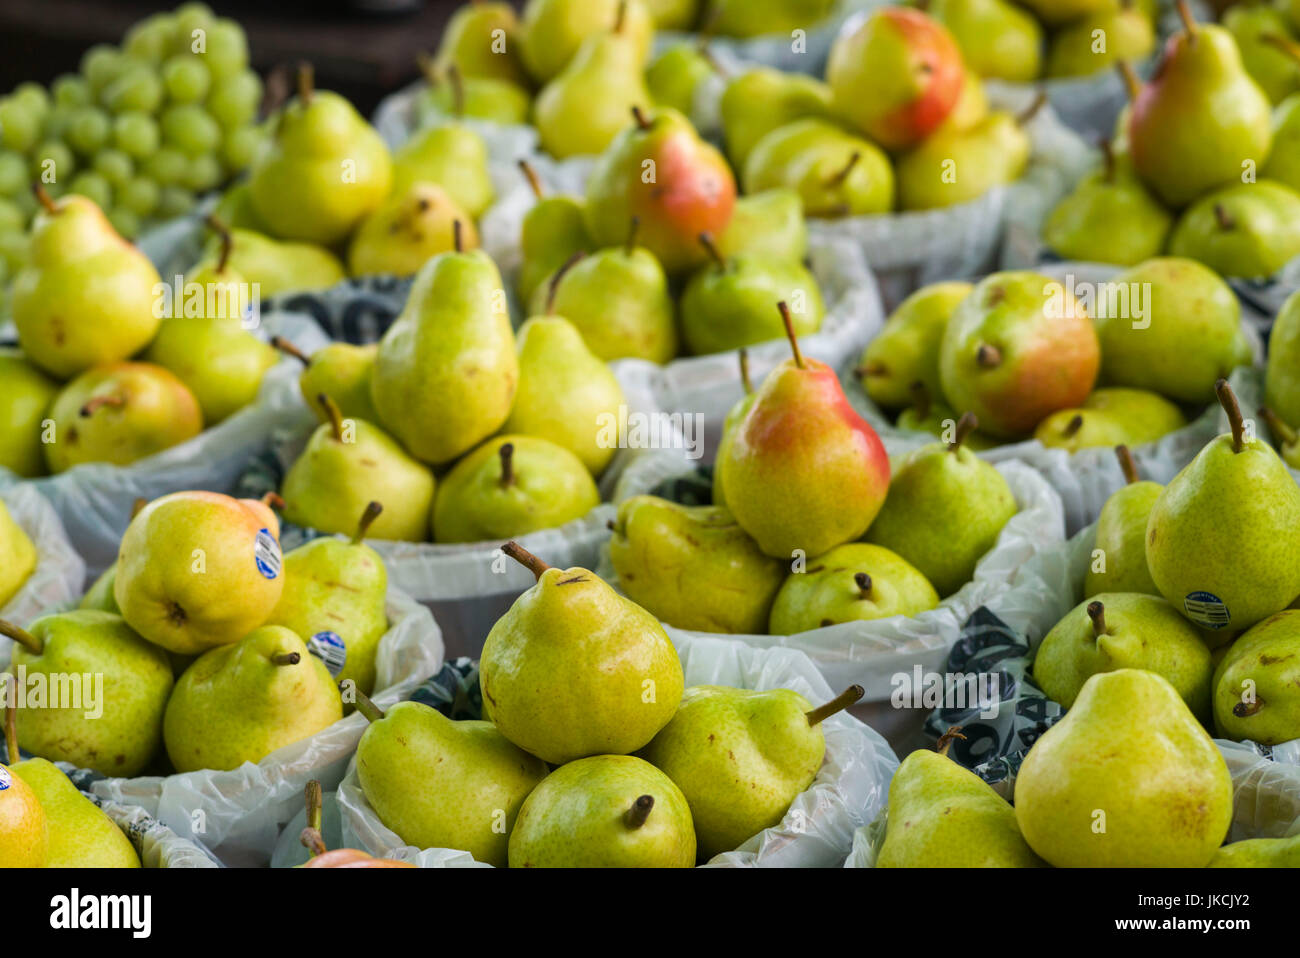 Canada, Quebec, Montreal, Marche Jean Talon market, pears Stock Photo